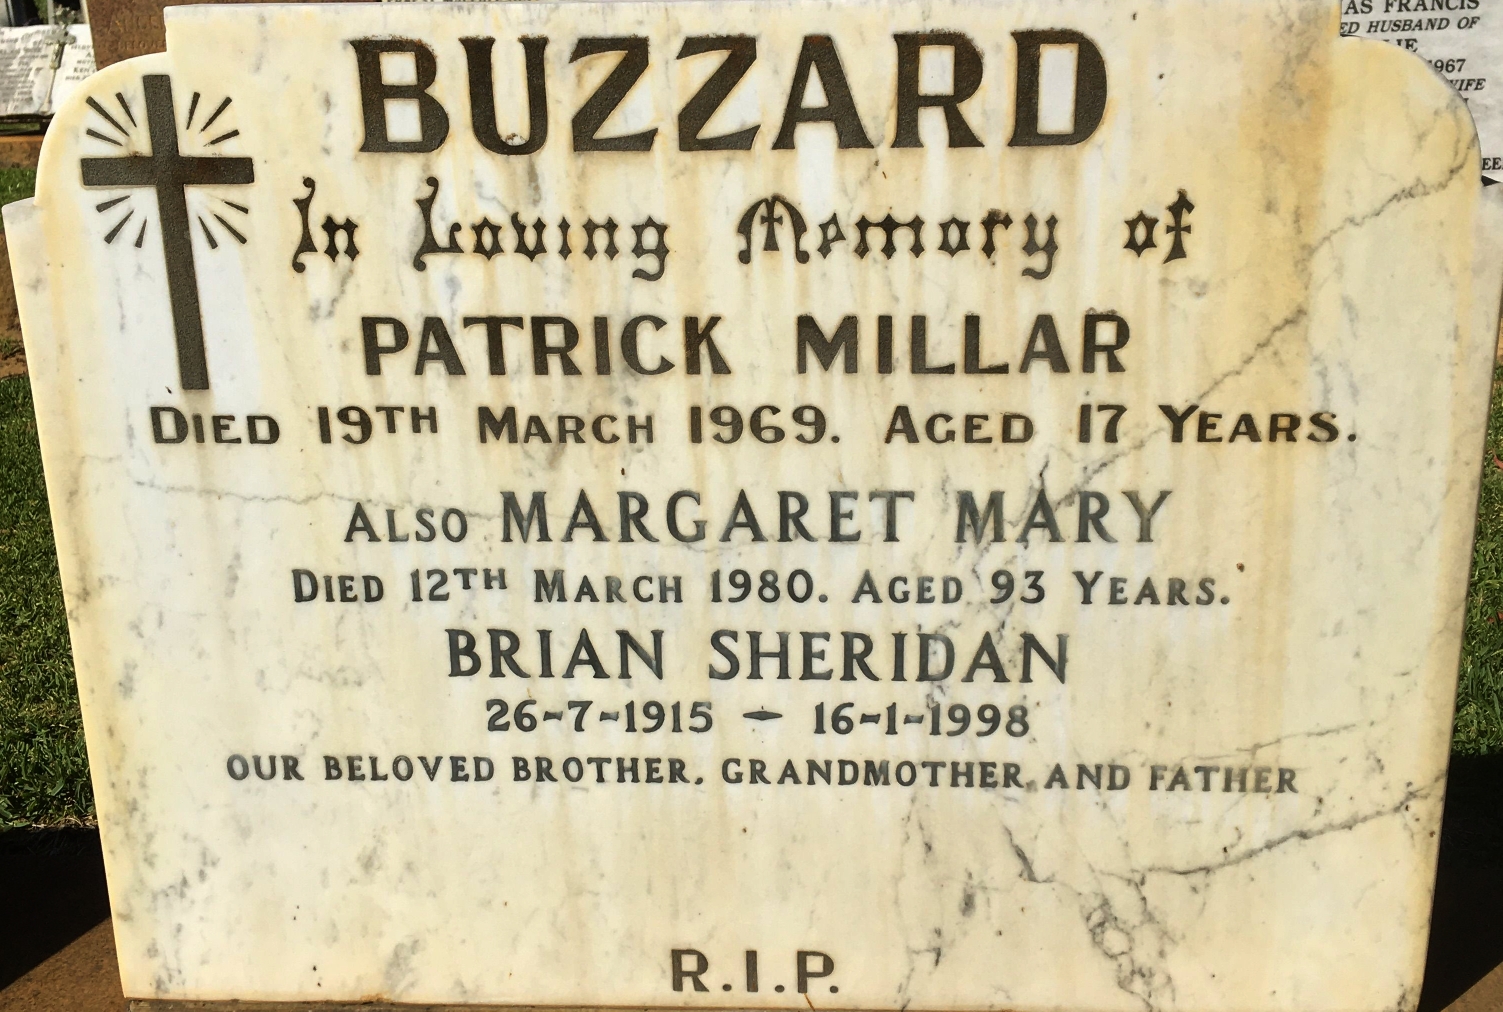 Margaret Mary Buzzard (nee Sheridan) Death Certificate